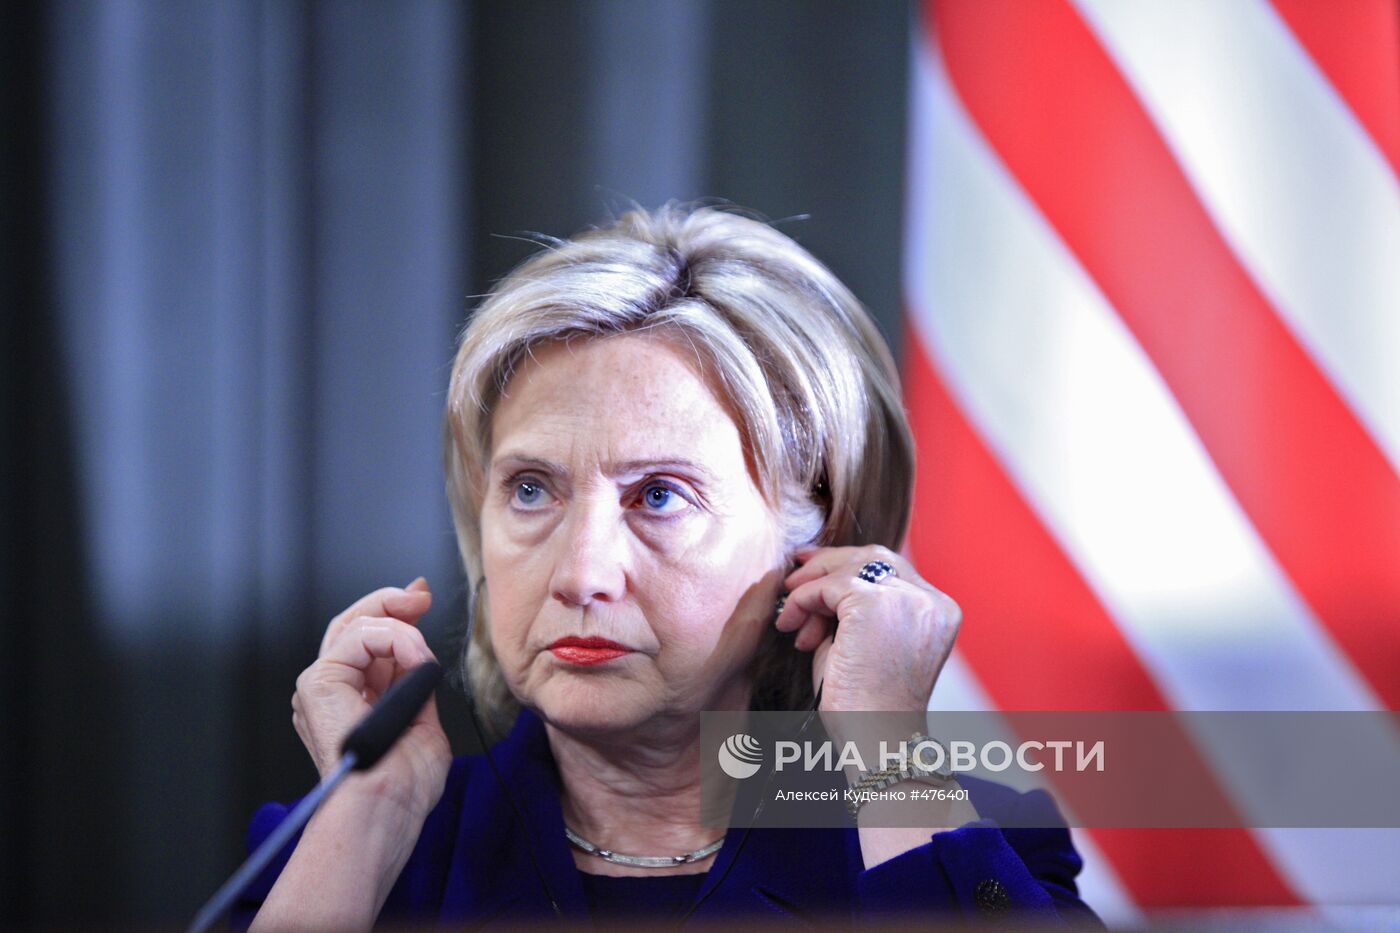 Визит госсекретаря США Хиллари Клинтон в Москву